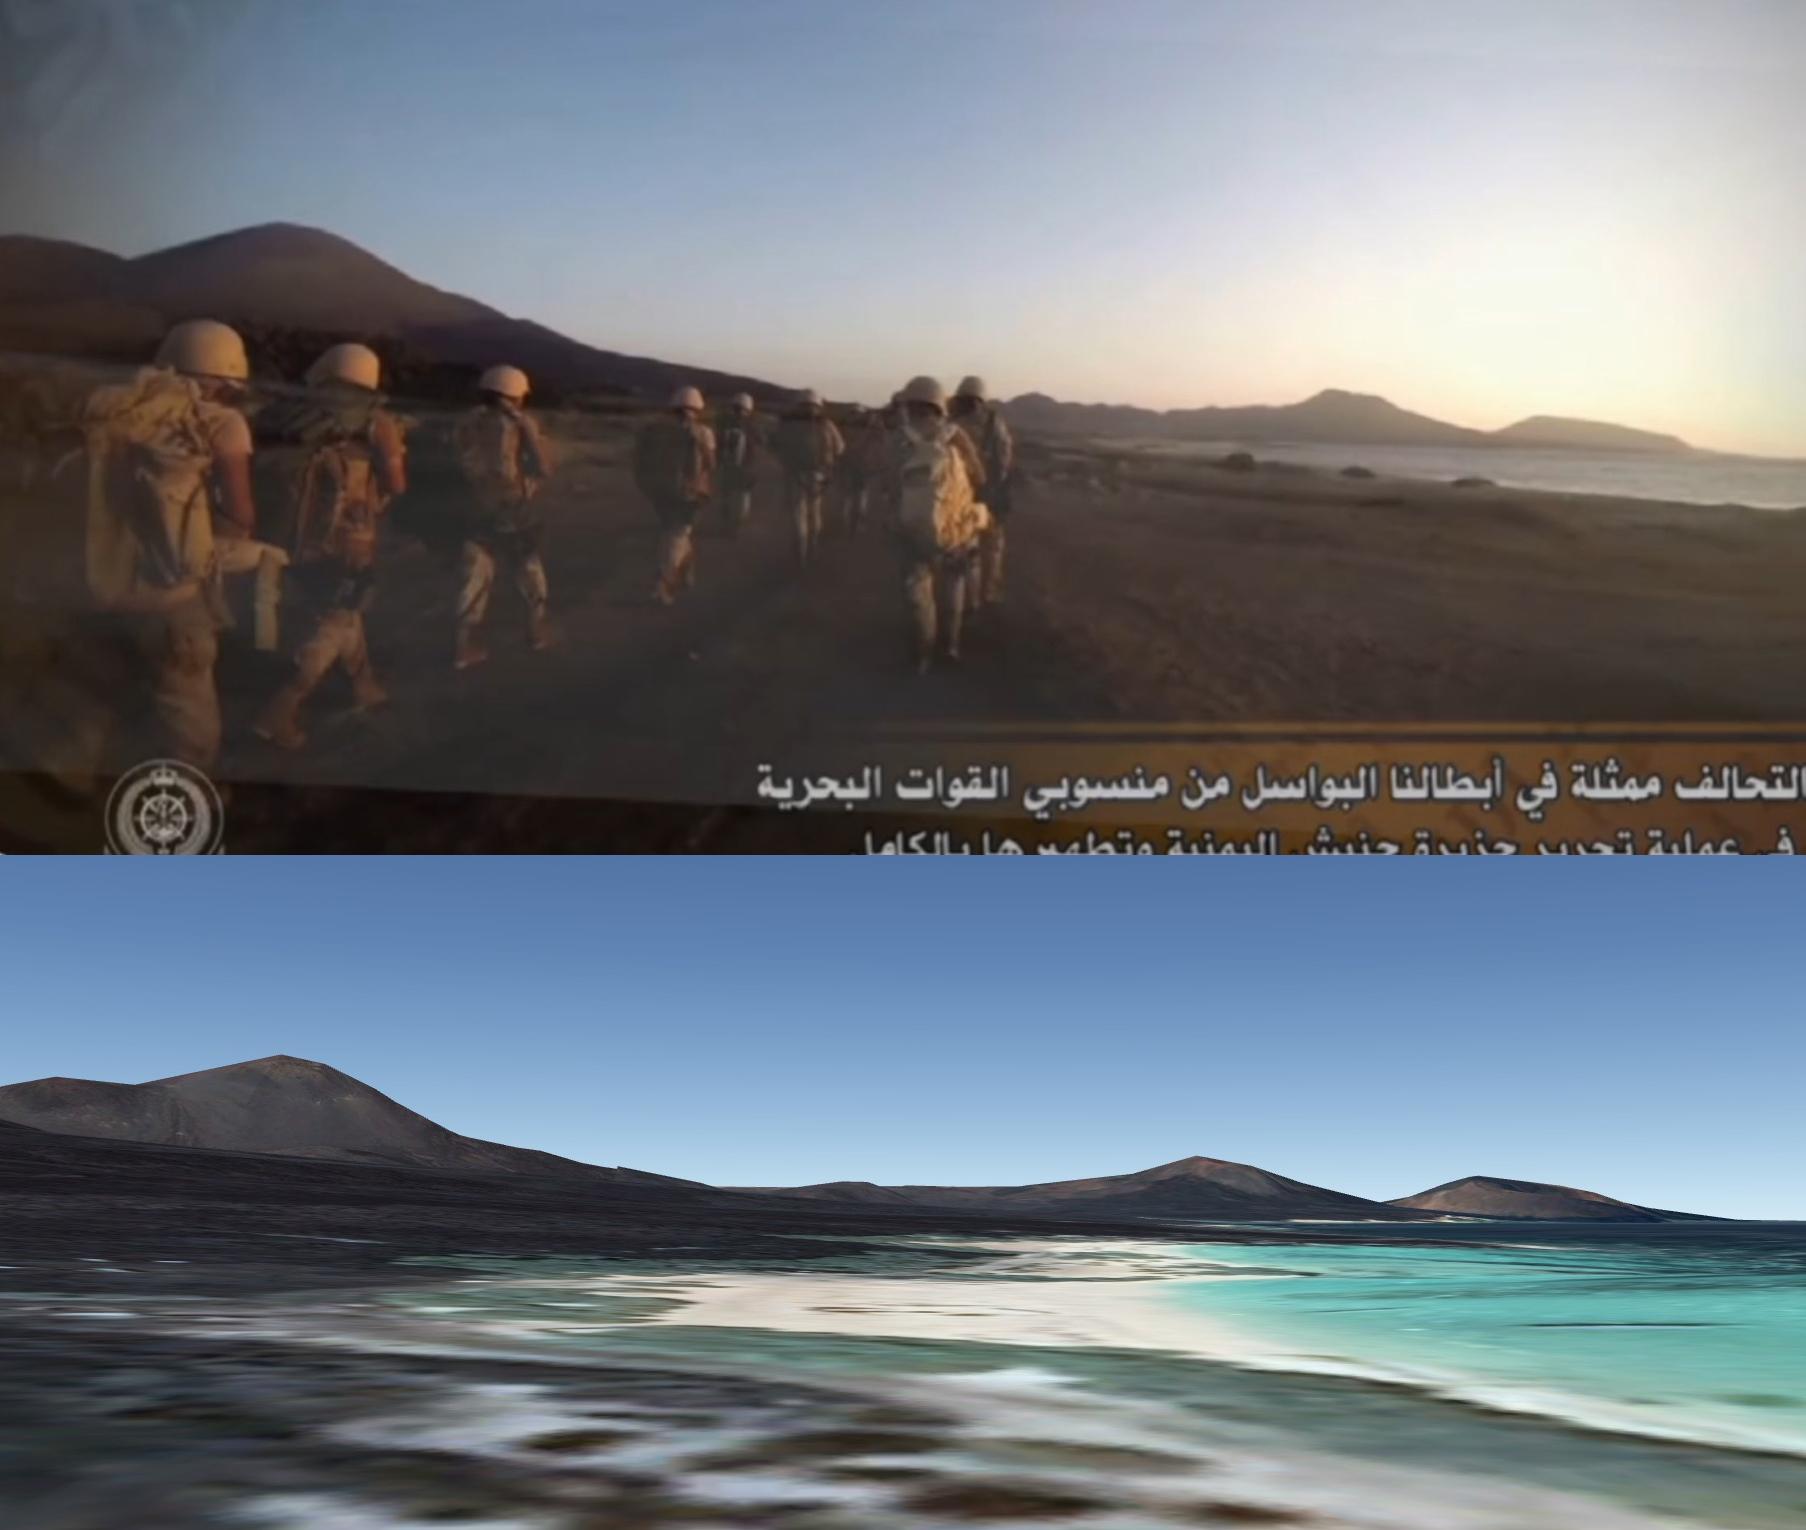 La progression de la troupe au sol confirme elle aussi que ces soldats se trouve sur l’archipel Hanish, en territoire yéménite. [Google Earth]